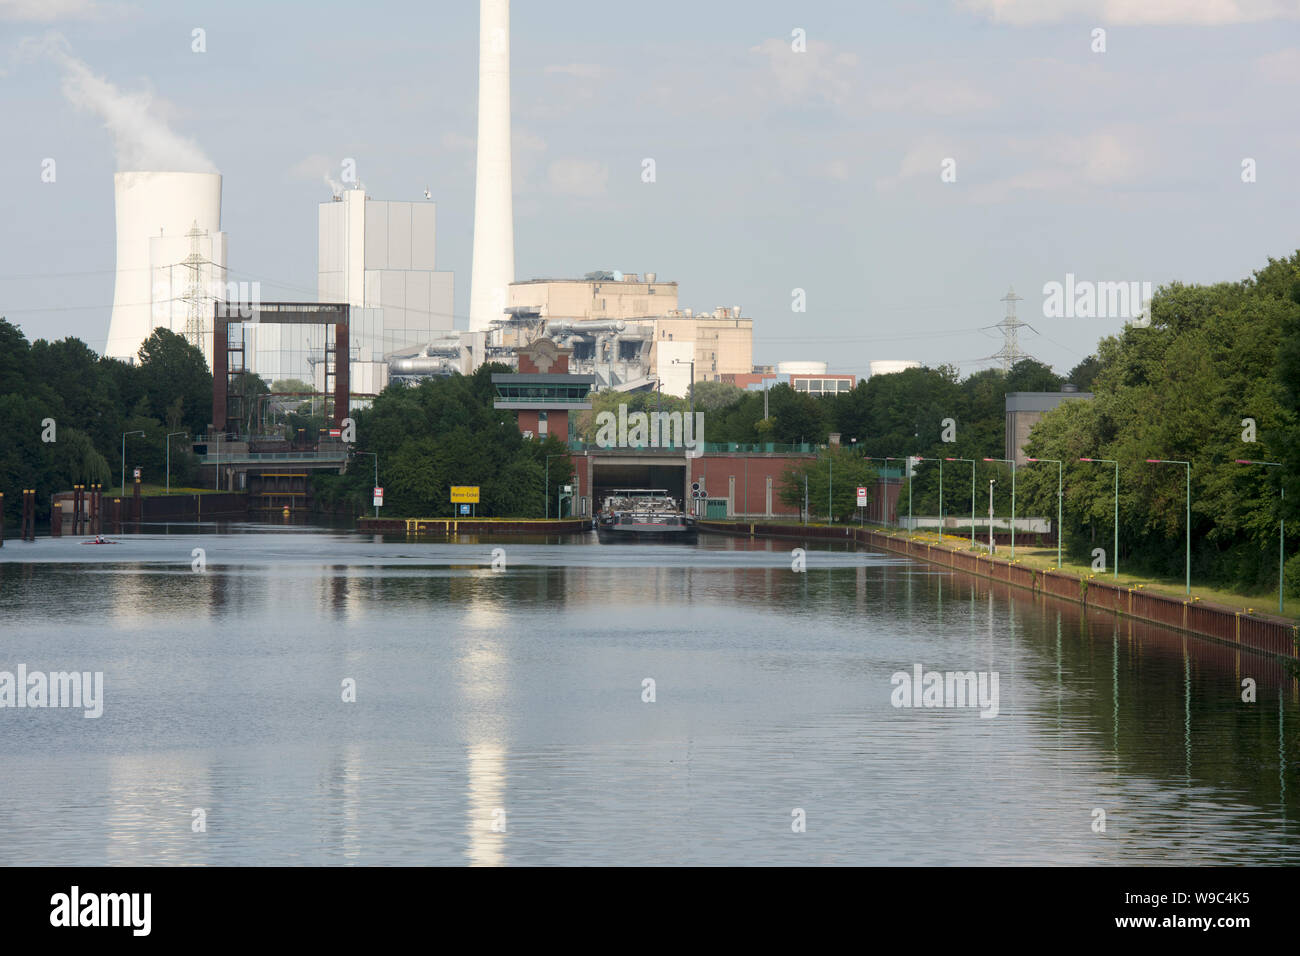 Deutschland, Ruhrgebiet, Wanne-Eickel, Schleuse Herne Crange am Rhein-Herne-Kanal, im Hintergrund das Steag Kraftwerk a Herne Foto Stock